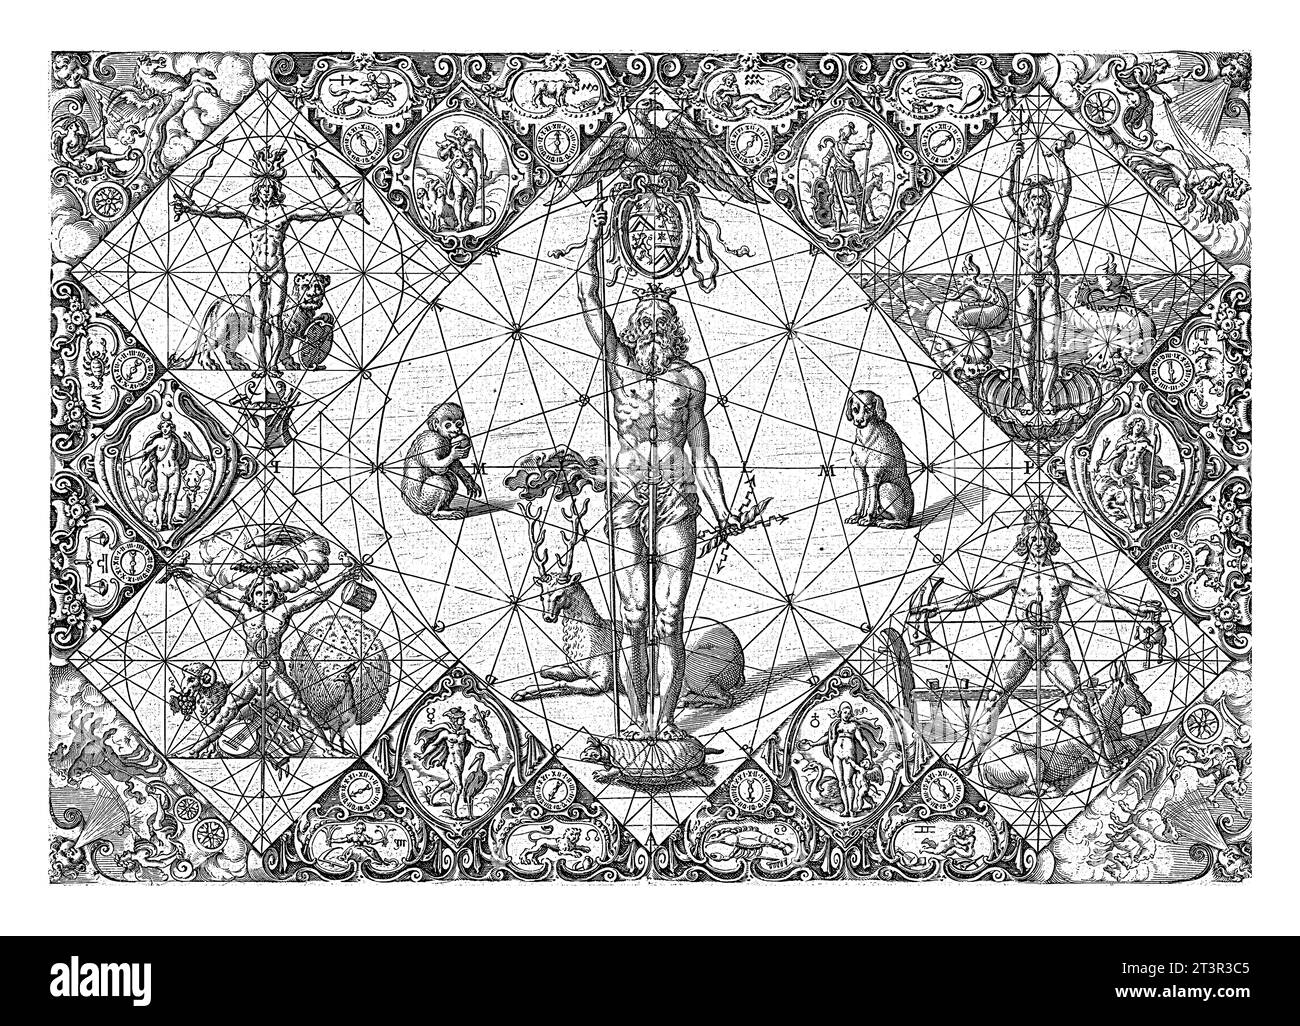 Gekrönter Jupiter inmitten der Elemente und Planeten, Michiel le Blon, 1597–1656 der gekrönte Jupiter steht innerhalb eines Kreises auf einer Schildkröte und ist umgeben Stockfoto